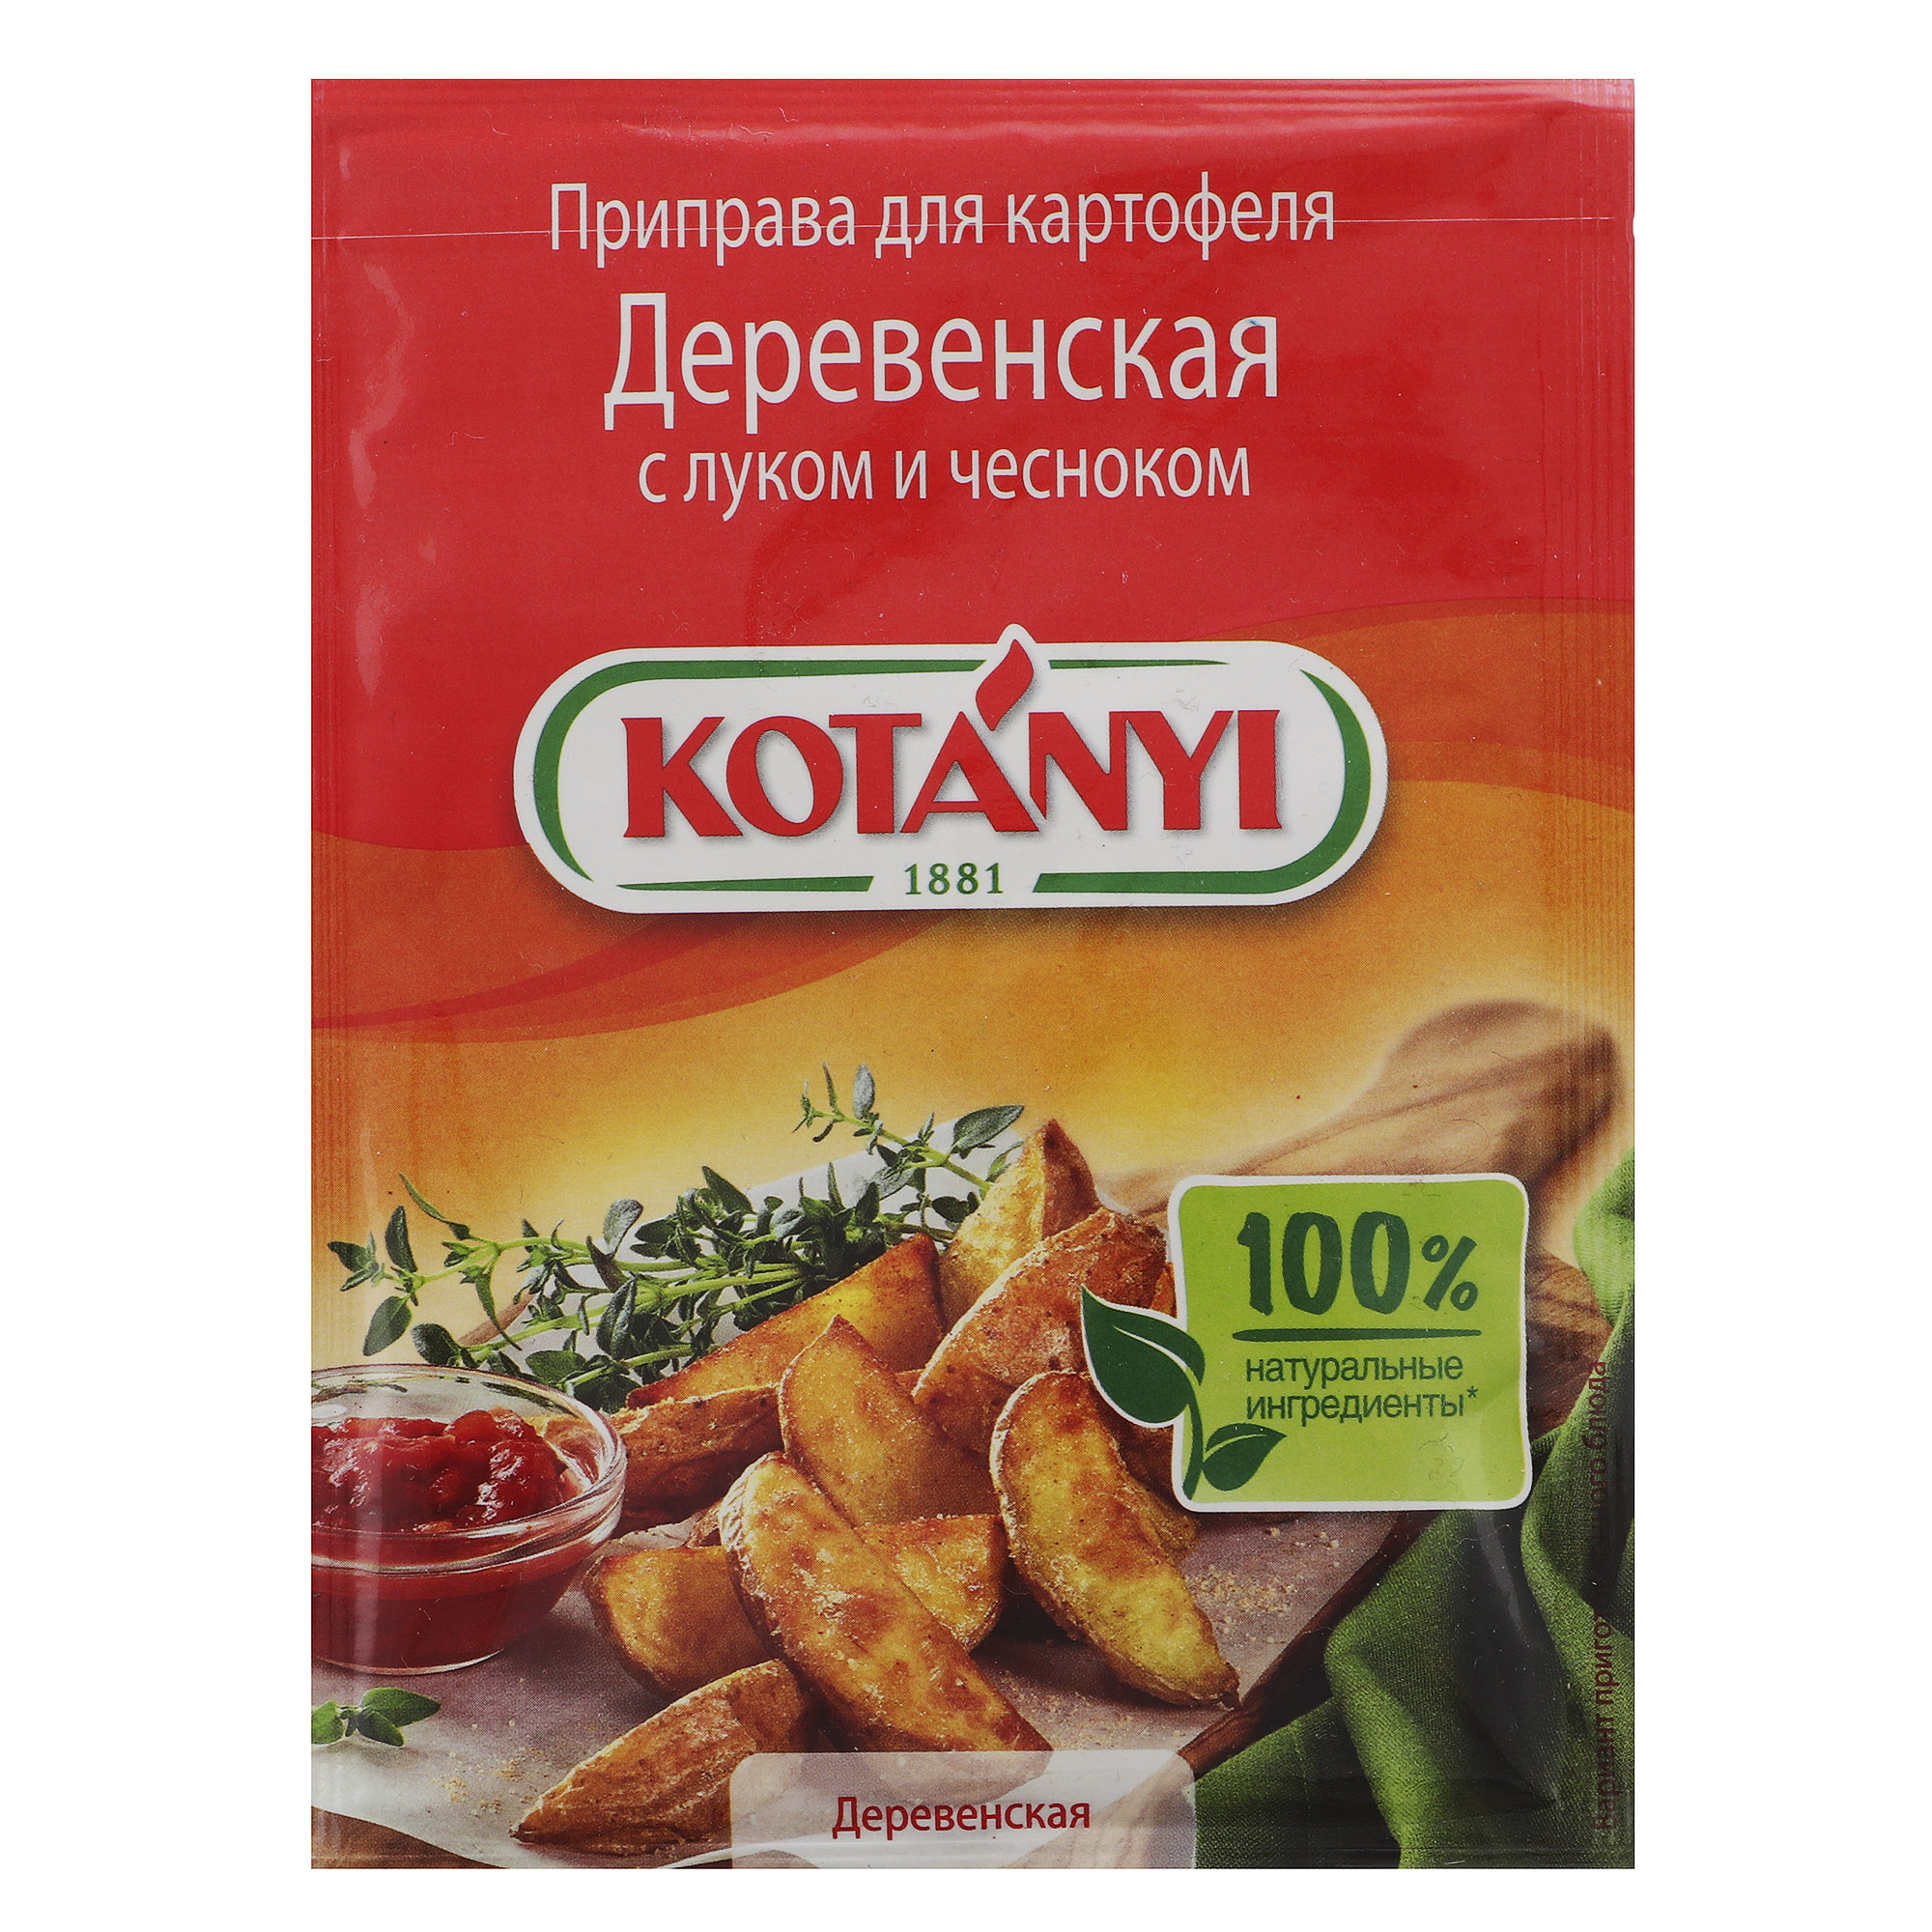 Приправа Kotanyi Деревенская для картофеля с луком и чесноком 20 г смесь 4 перца kotanyi 20 г